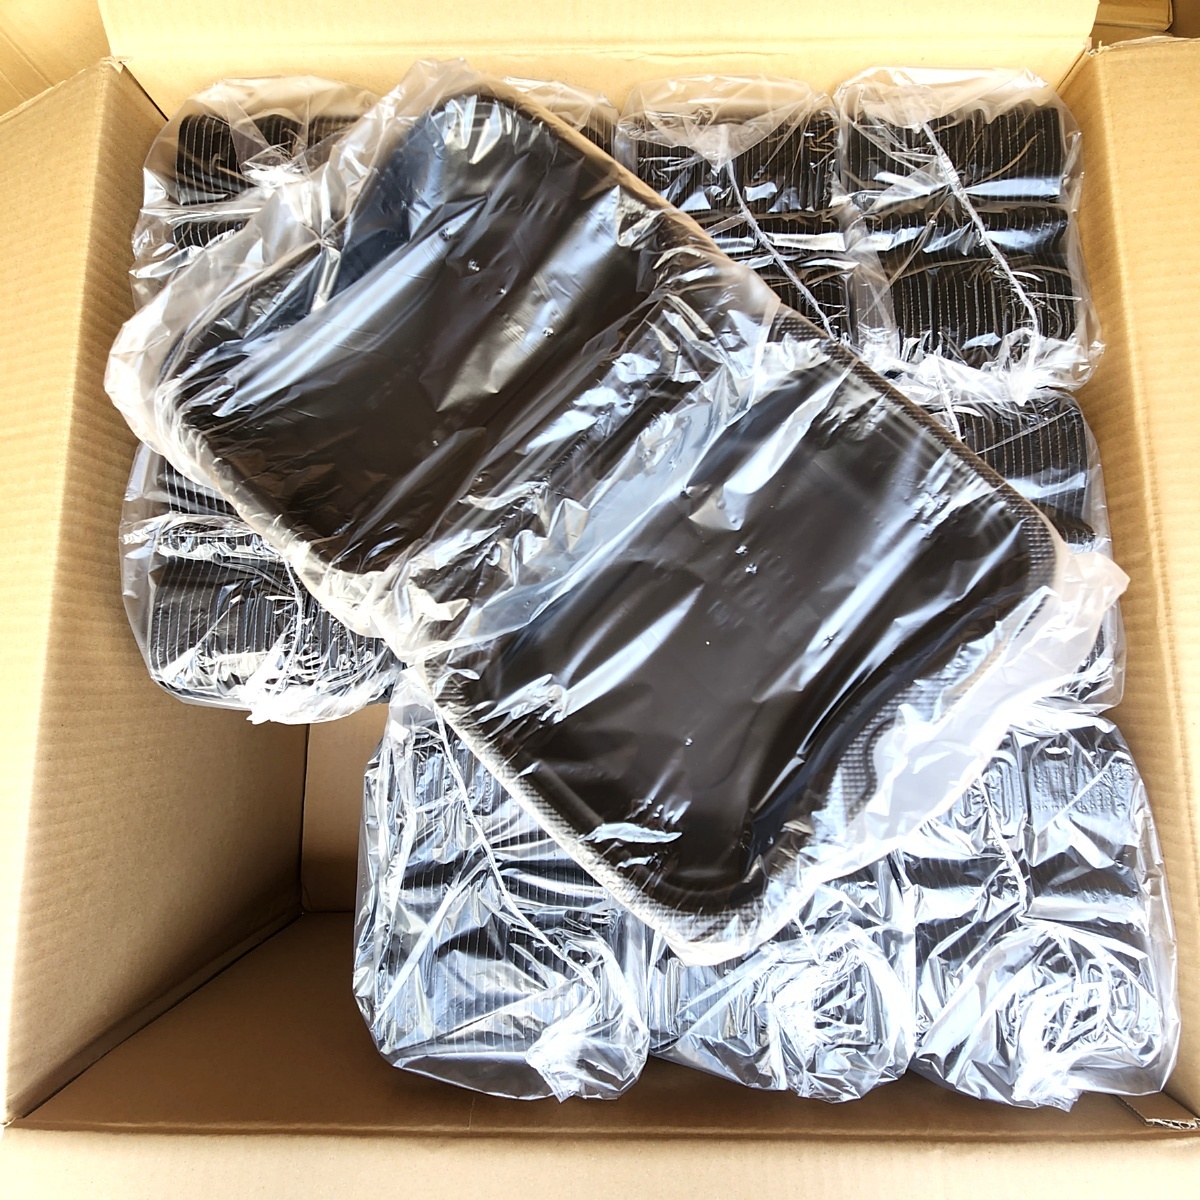 大量 300枚 バイオデリカ シェルBOX 40 黒 RHDT101 リスパック 使い捨て容器 食品容器 弁当容器 業務用 店舗用 160s24-1082-3の画像1